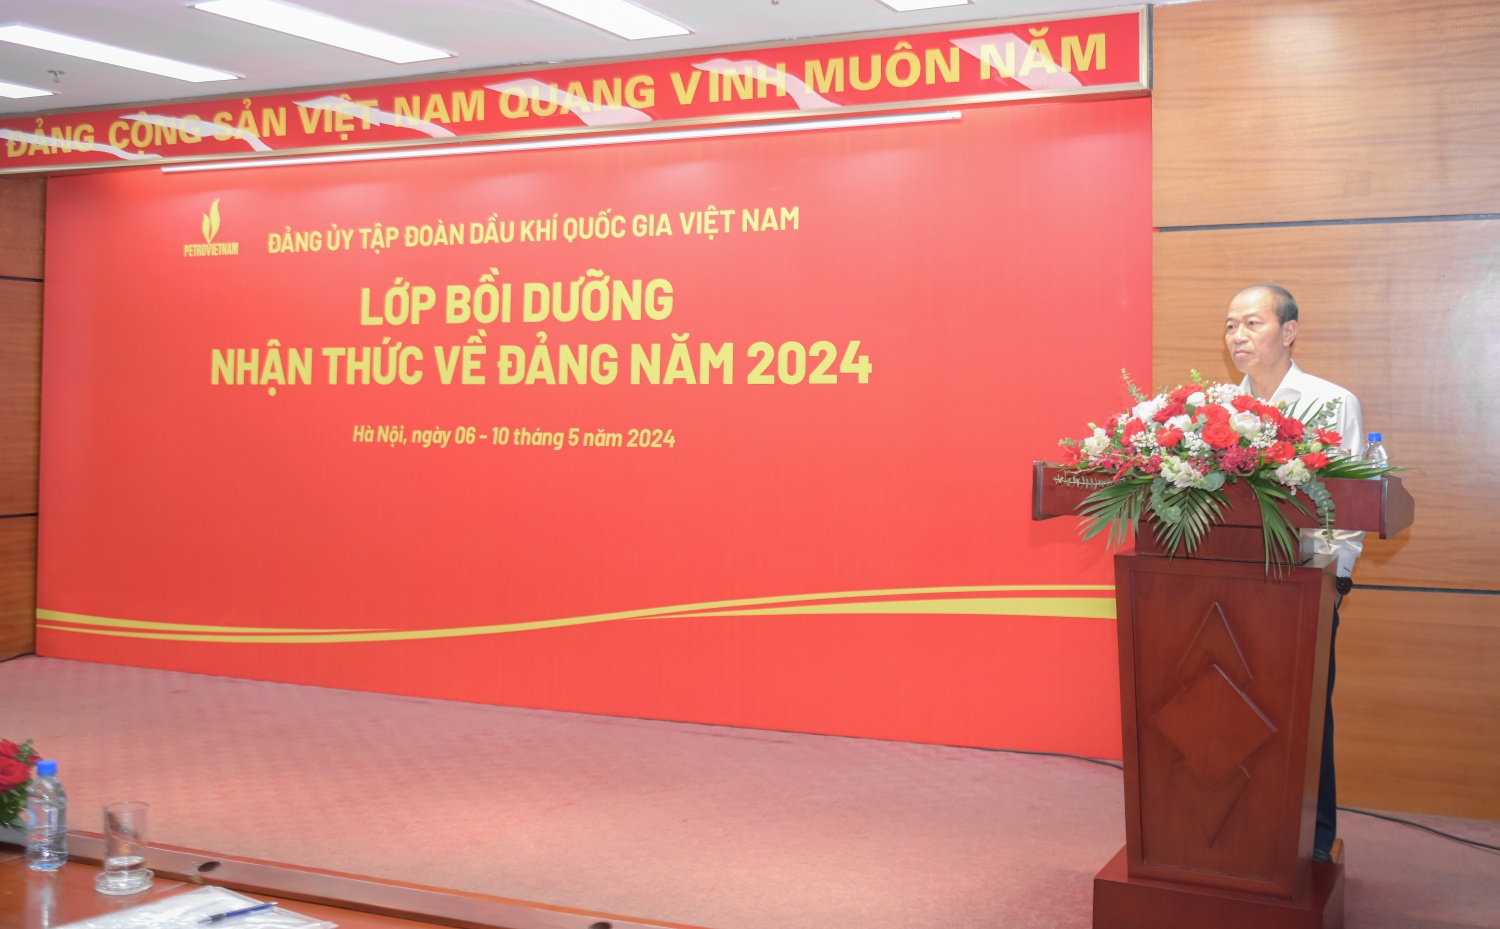 Petrovietnam khai giảng Lớp bồi dưỡng nhận thức về Đảng năm 2024 (lần thứ 2) khu vực Hà Nội”